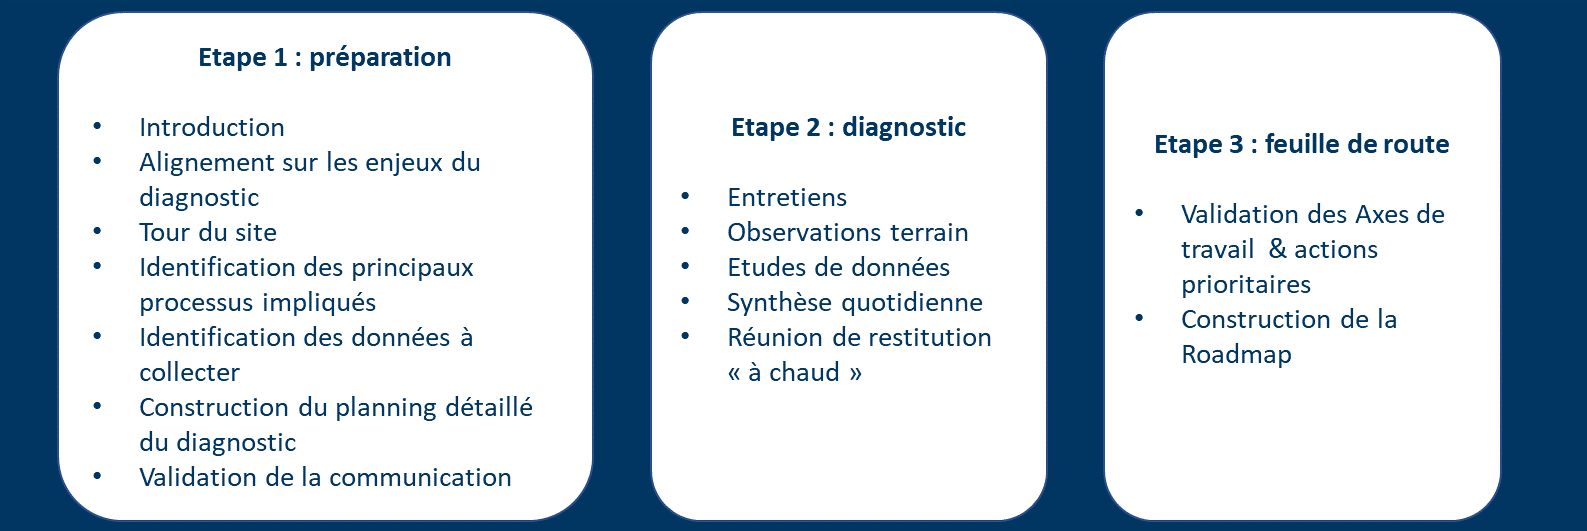 3 étapes du déroulement du diagnostic